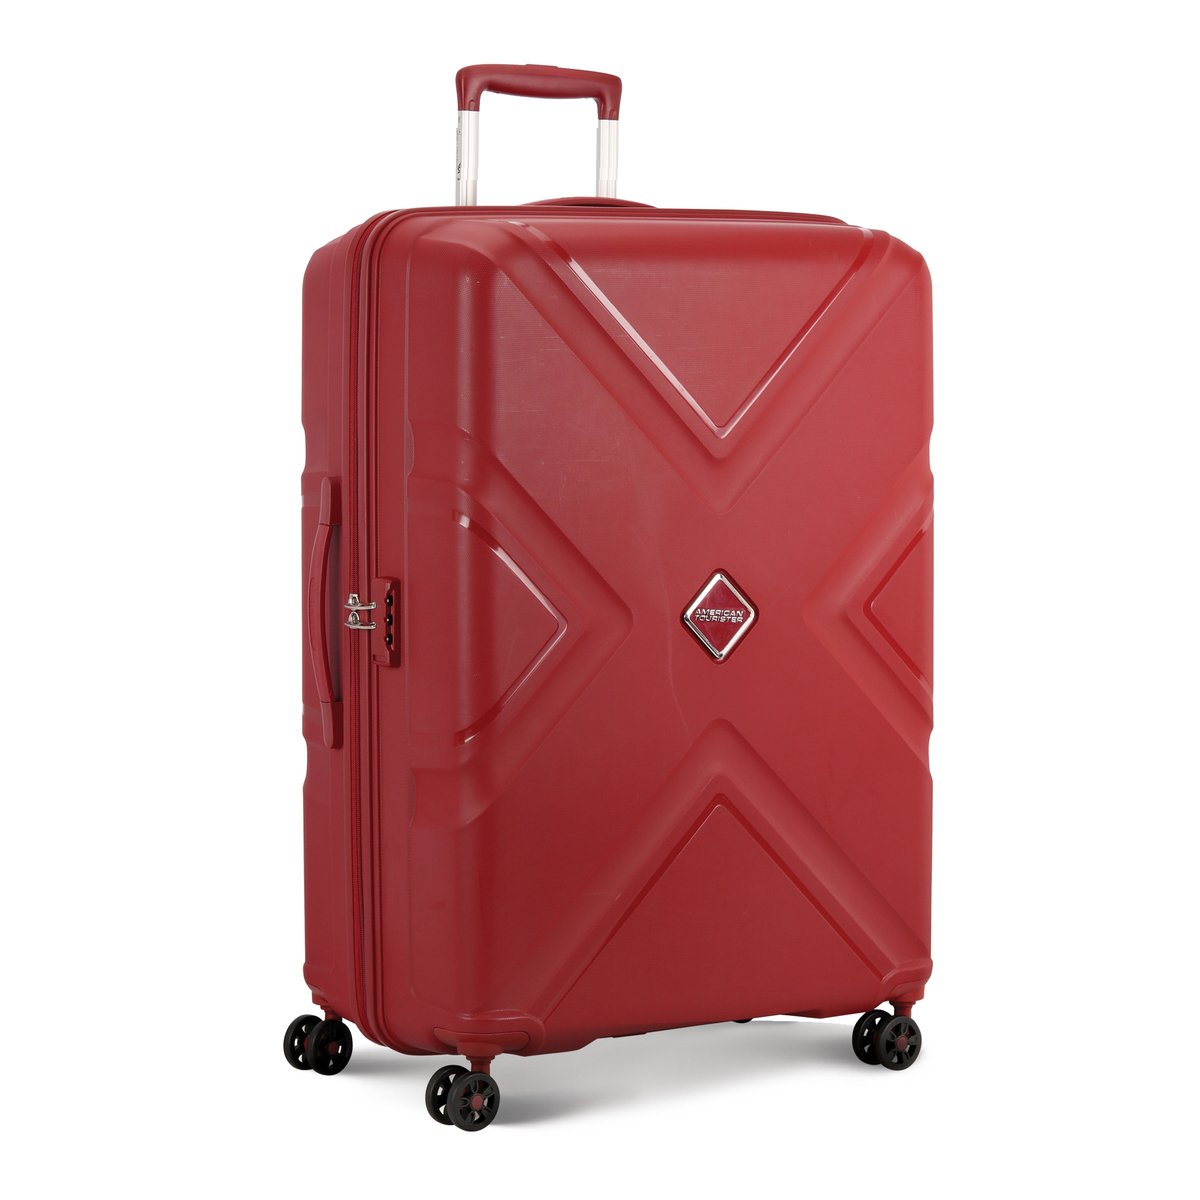 أميريكان توريستر كروس حقيبة سفر صلبة بـ4 عجلات 79 سم أحمر